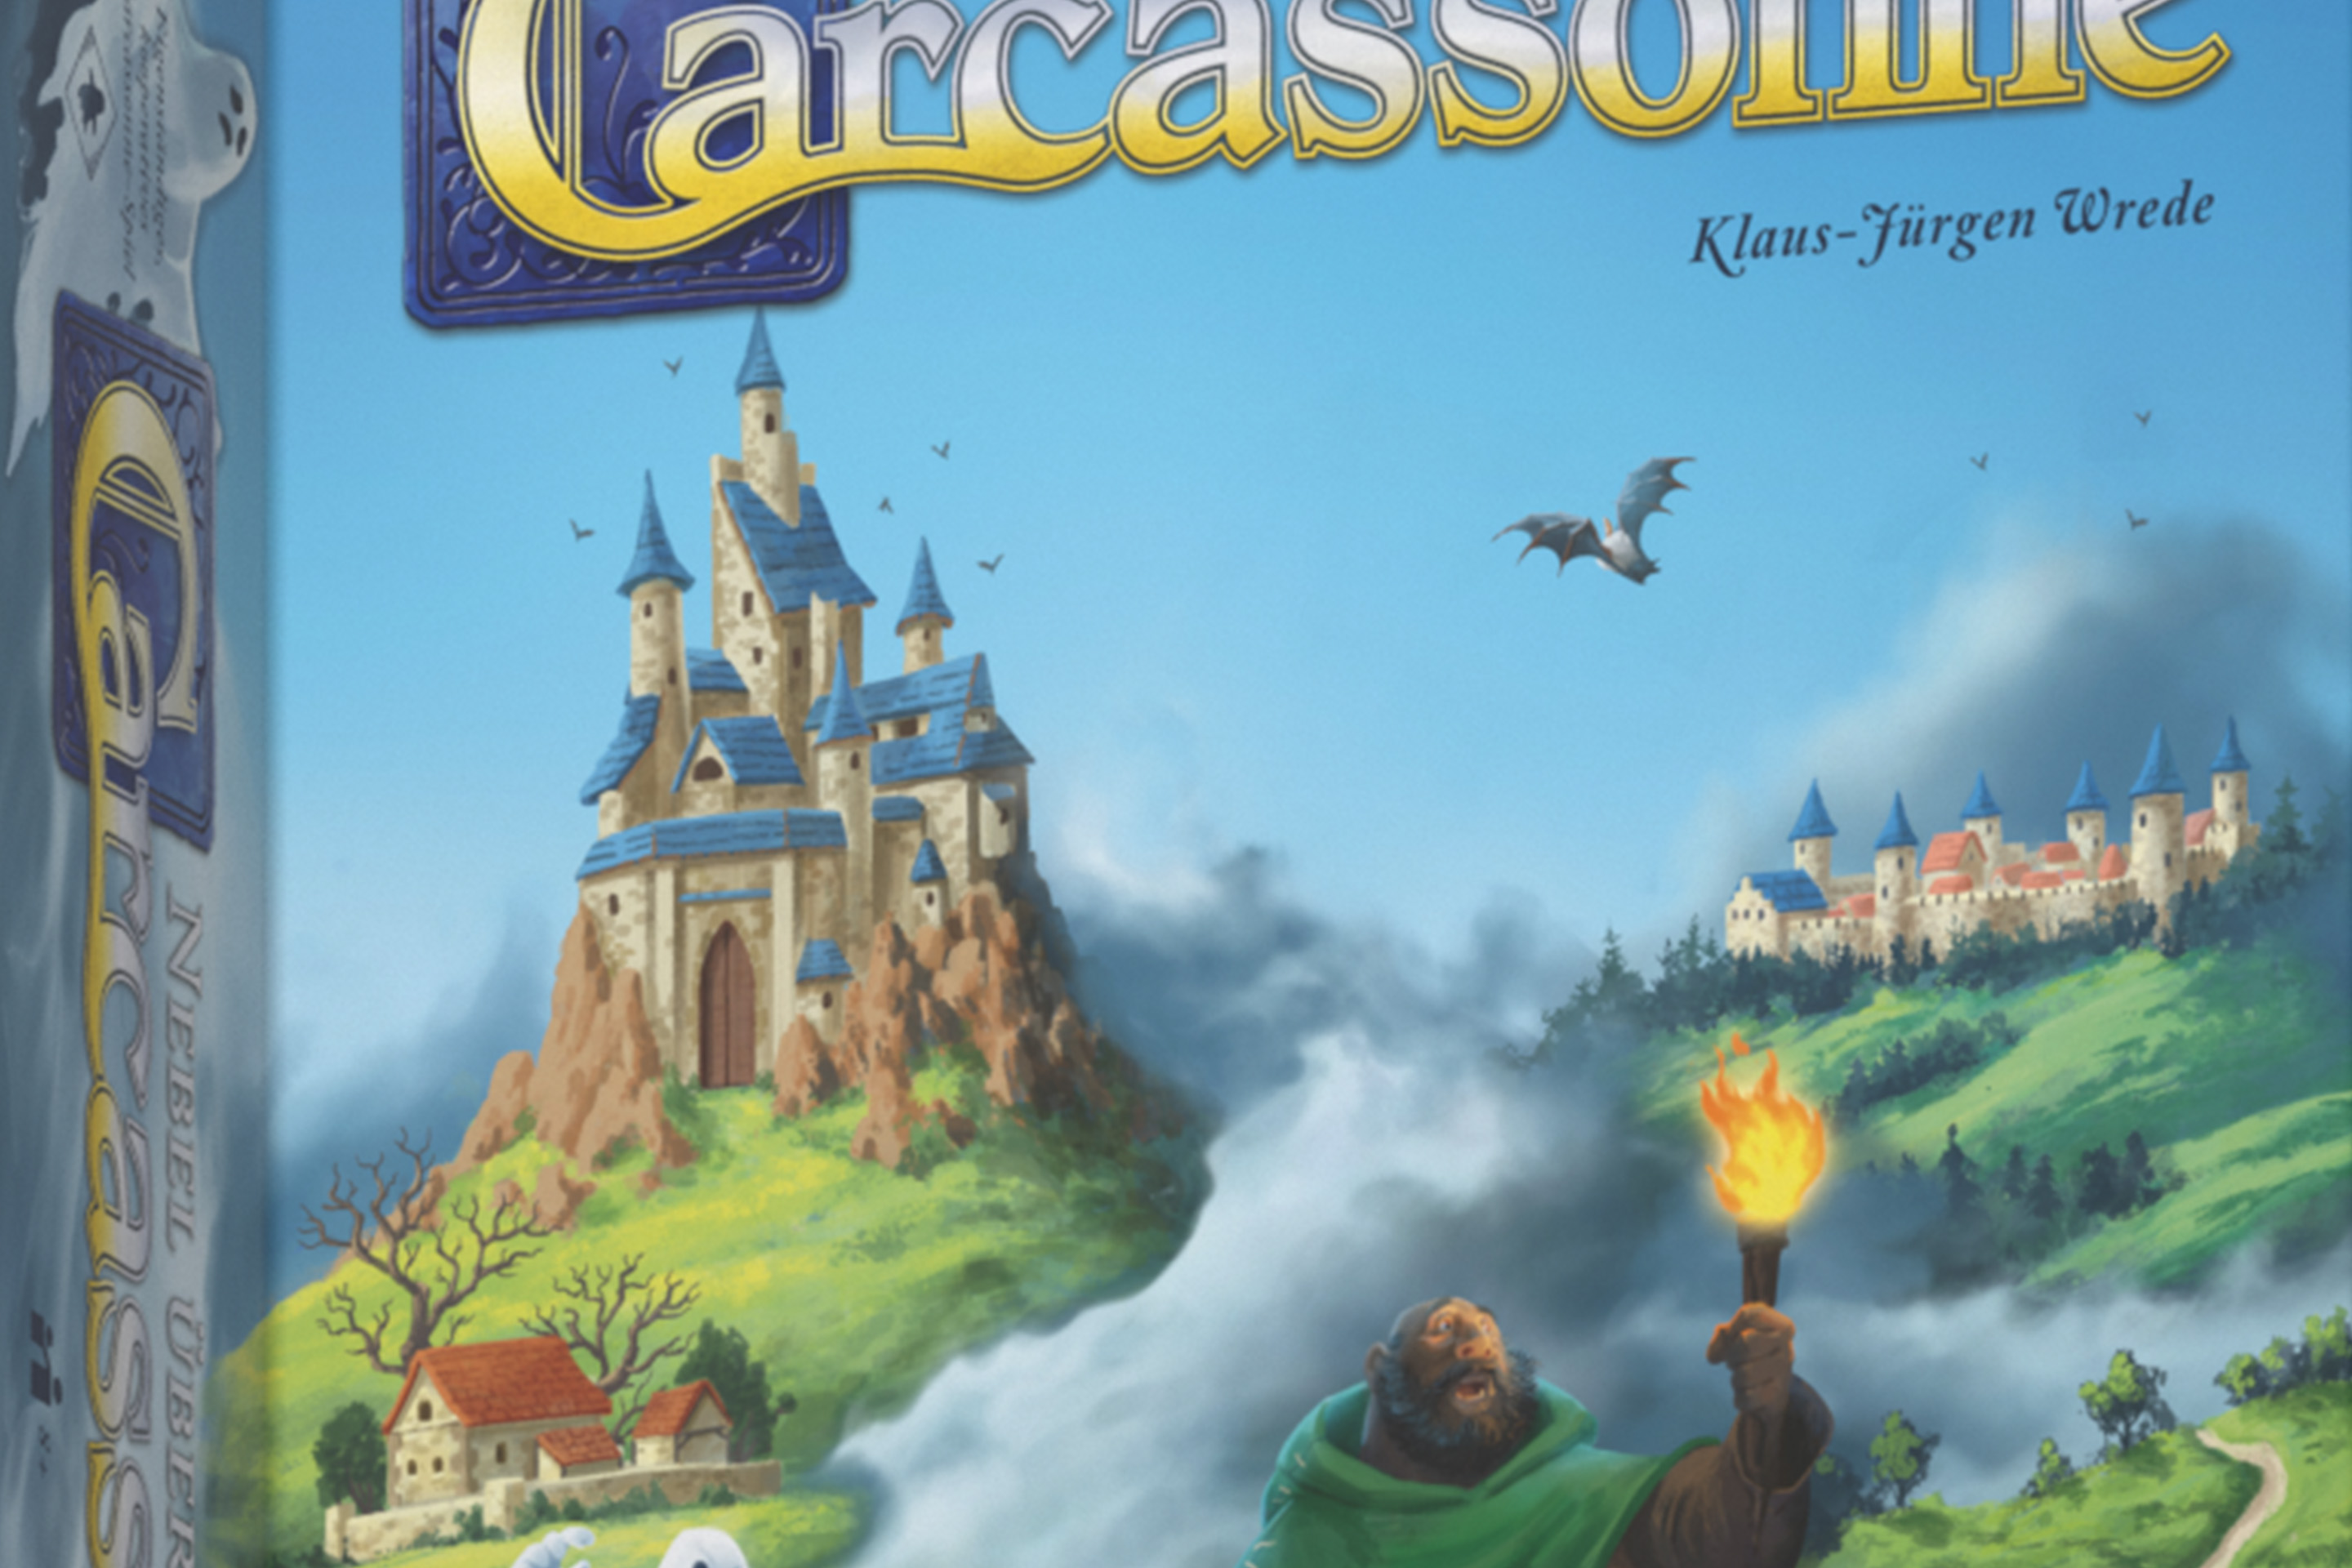 Foto: Carcassonne Spielfest